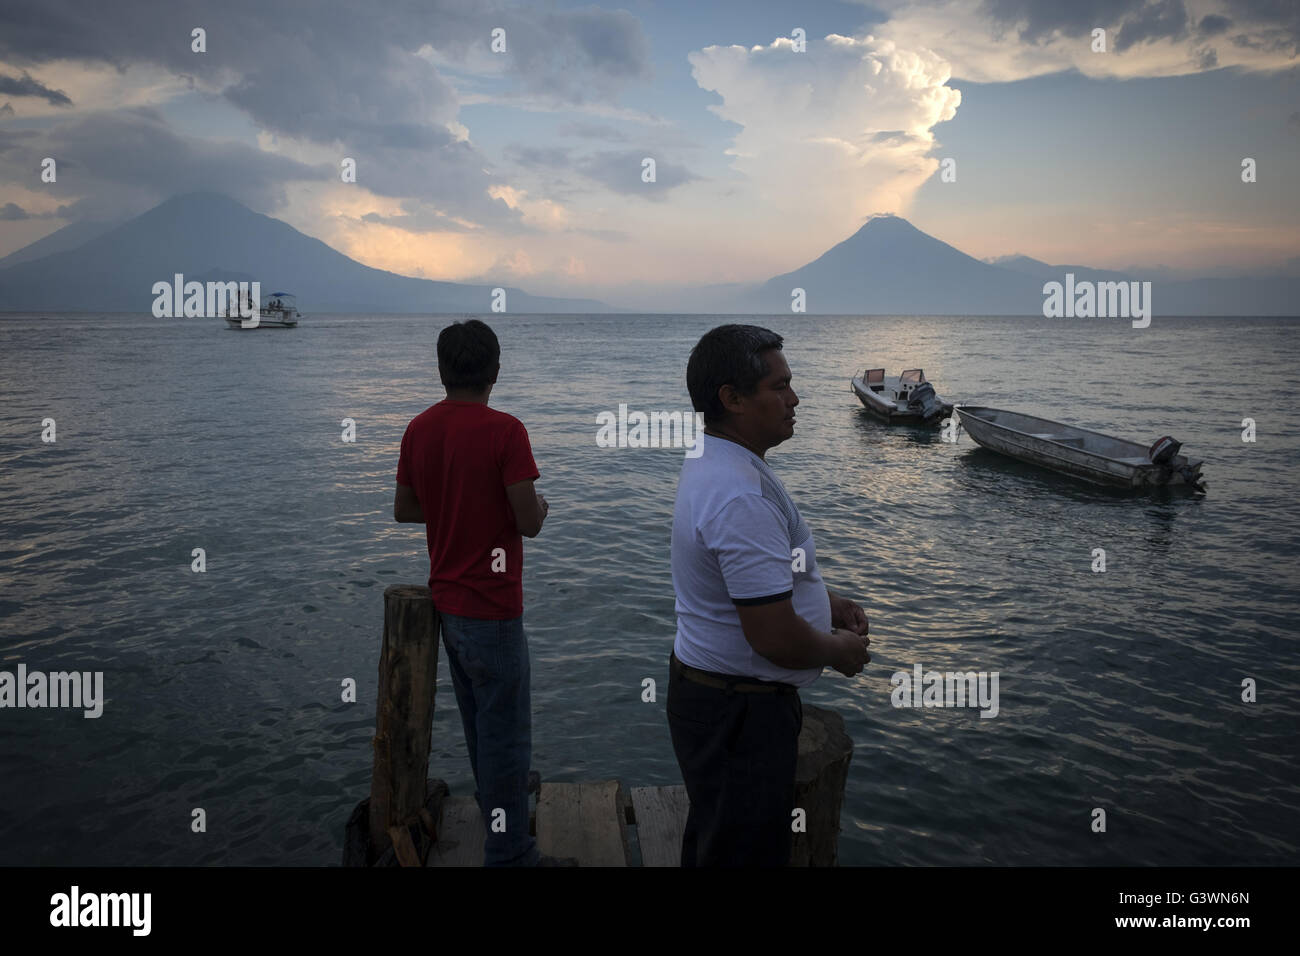 Two men fishing at sunset on lake Atitlan. Stock Photo